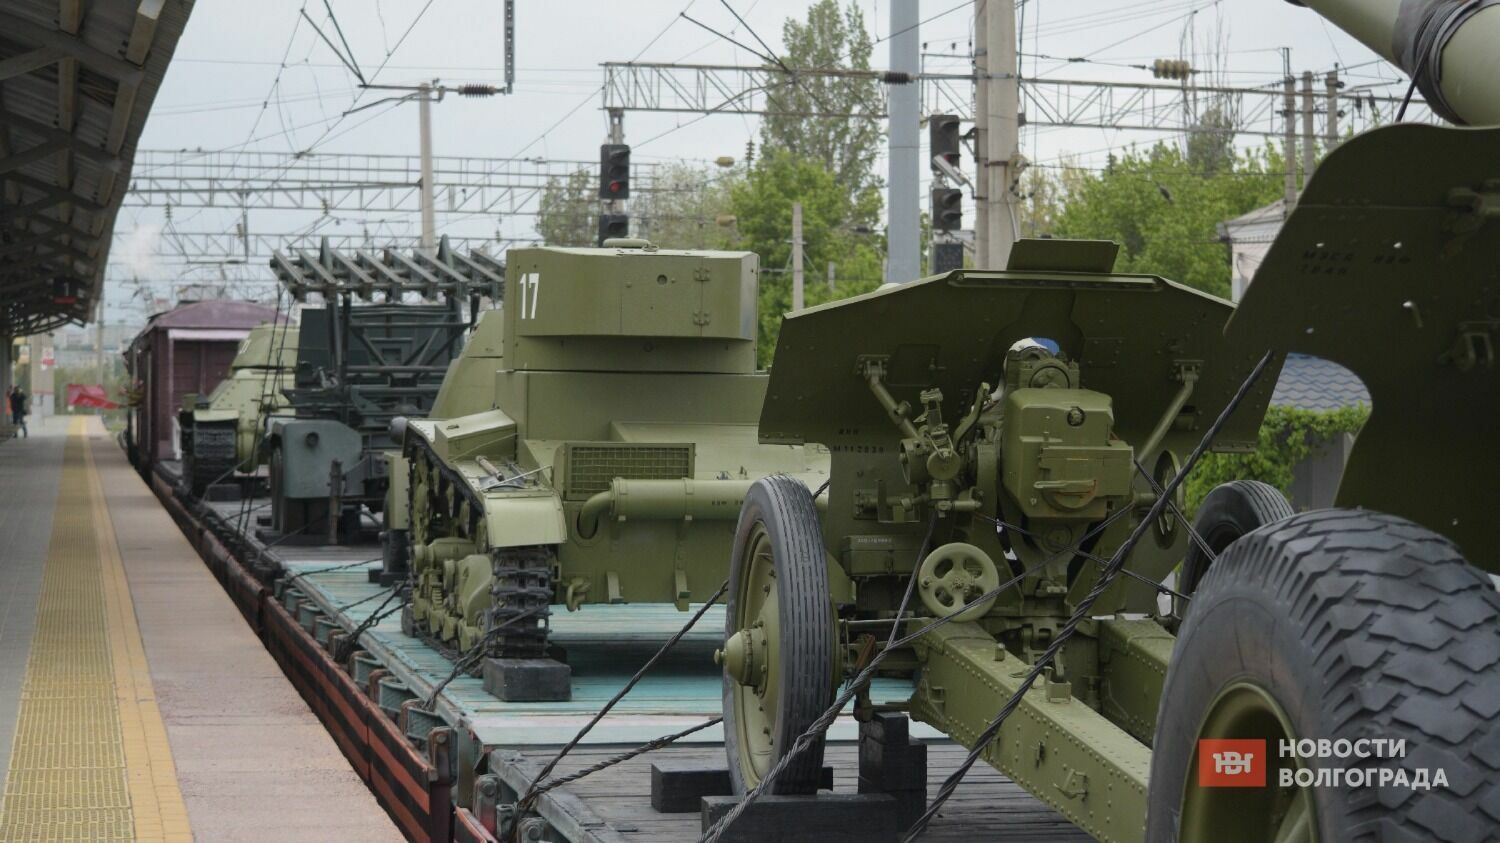 «Воинский эшелон» был сформирован из 2 паровозов и 6 платформ с техникой, применявшейся в период Сталинградской битвы.